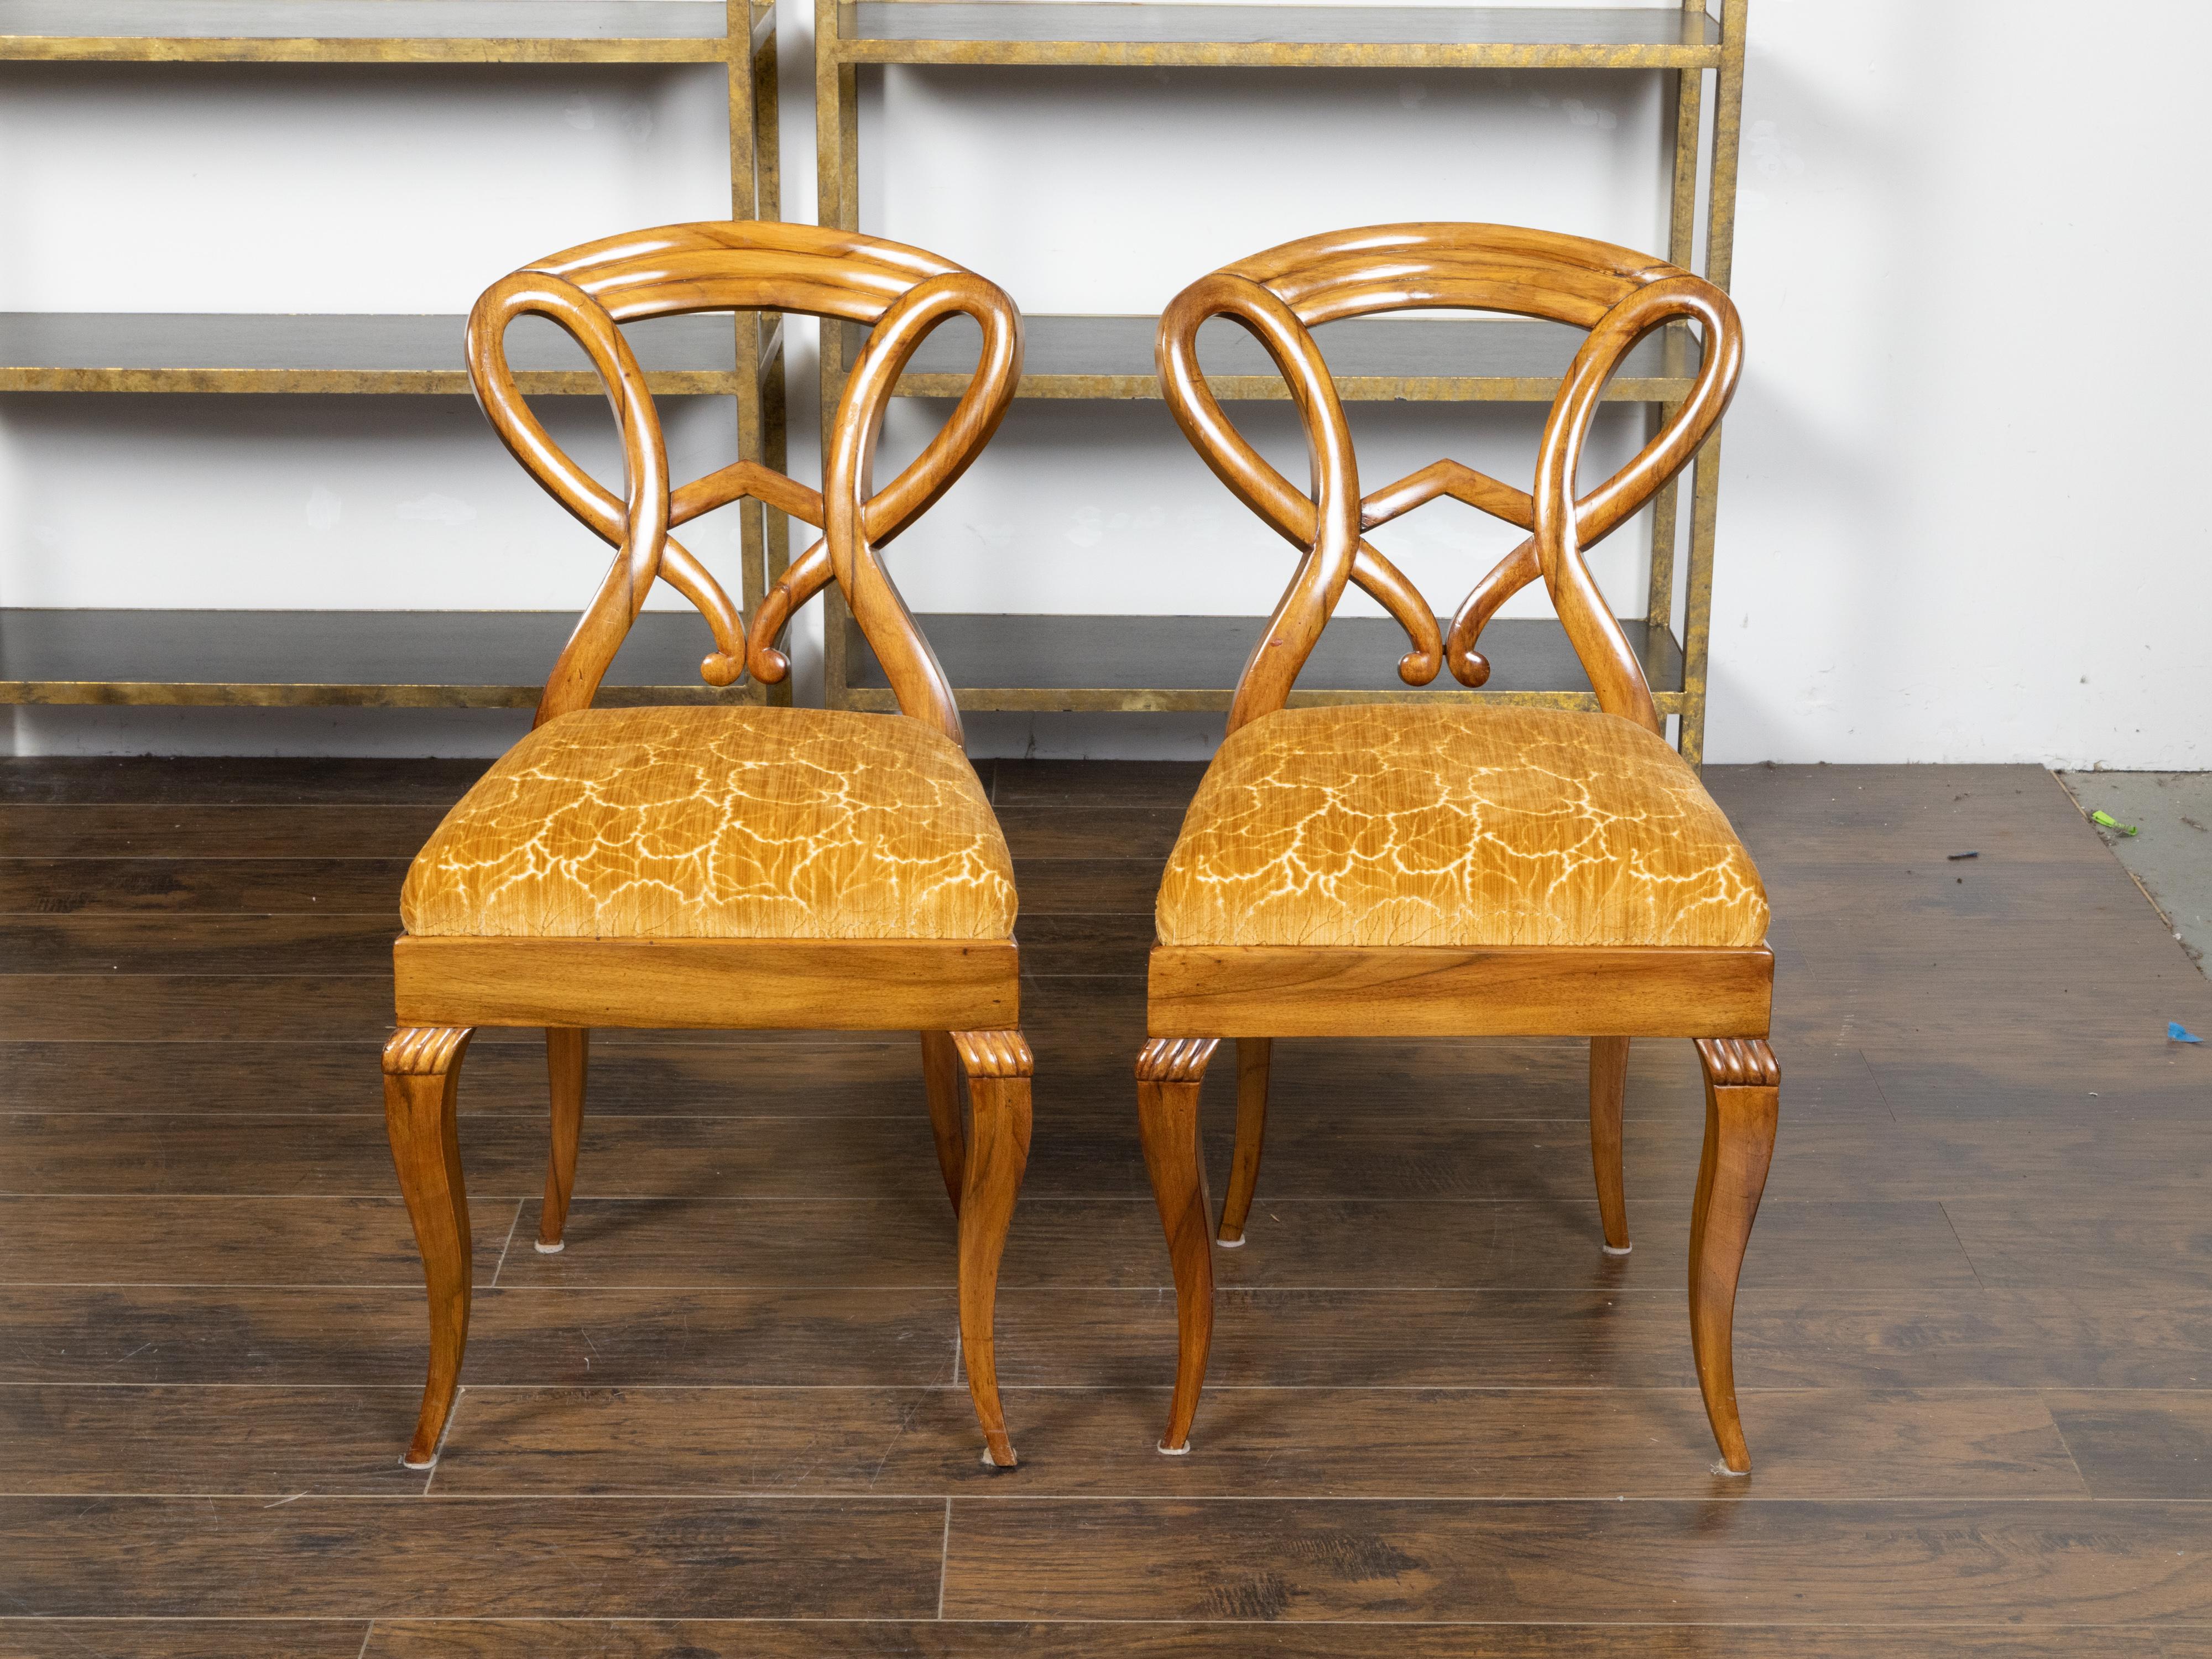 Paire de chaises d'appoint autrichiennes d'époque Biedermeier, datant du XIXe siècle, avec des dossiers ouverts sculptés inhabituels, des pieds incurvés, des motifs de godrons sculptés et une tapisserie à motifs de feuilles. Créée en Autriche au